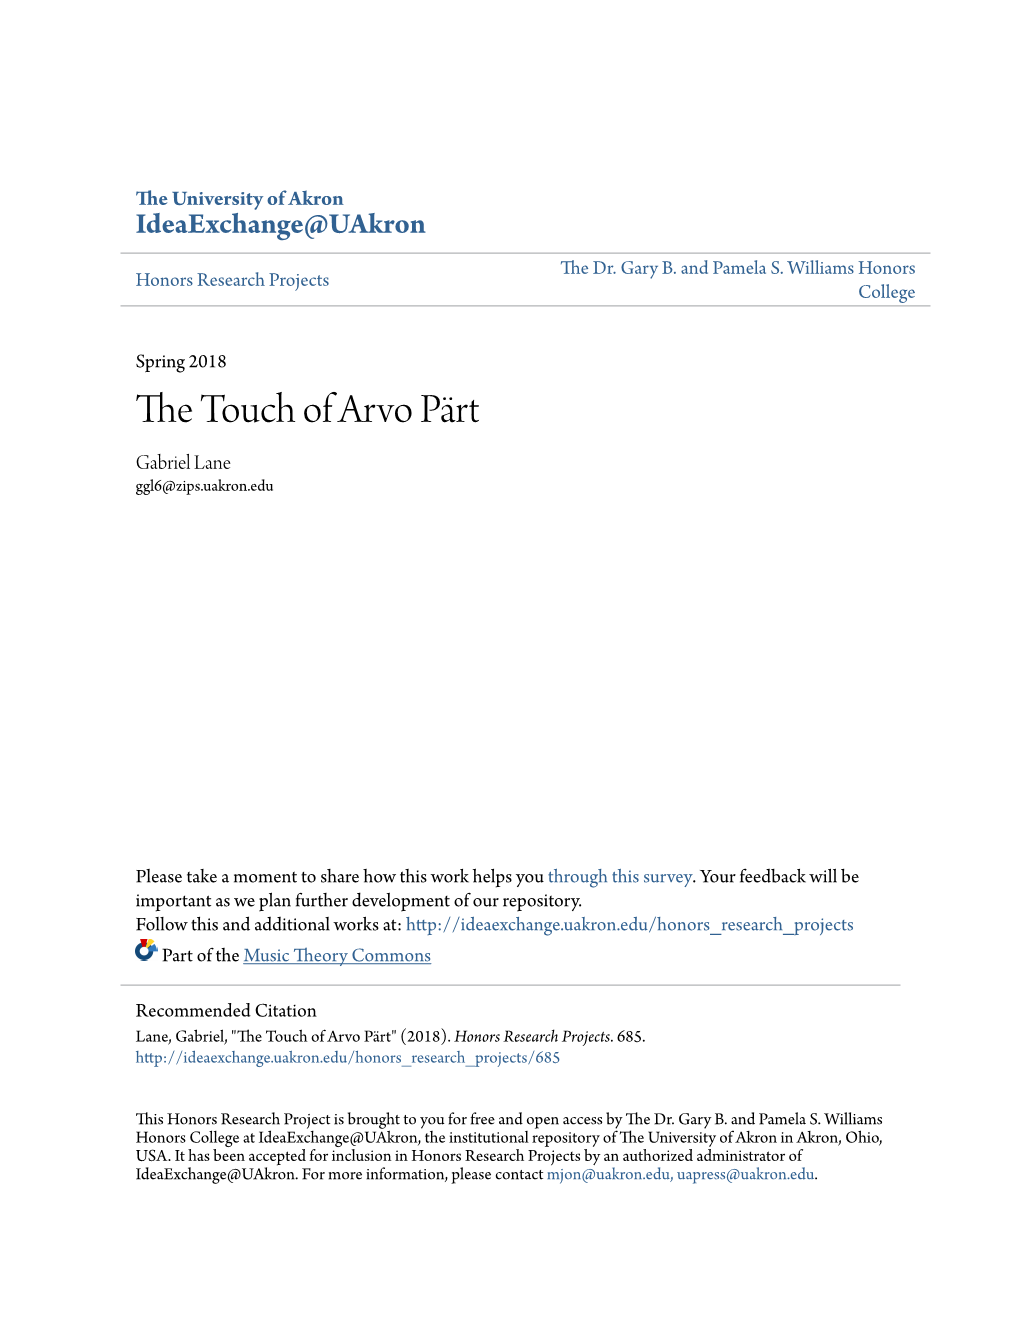 The Touch of Arvo Pärt